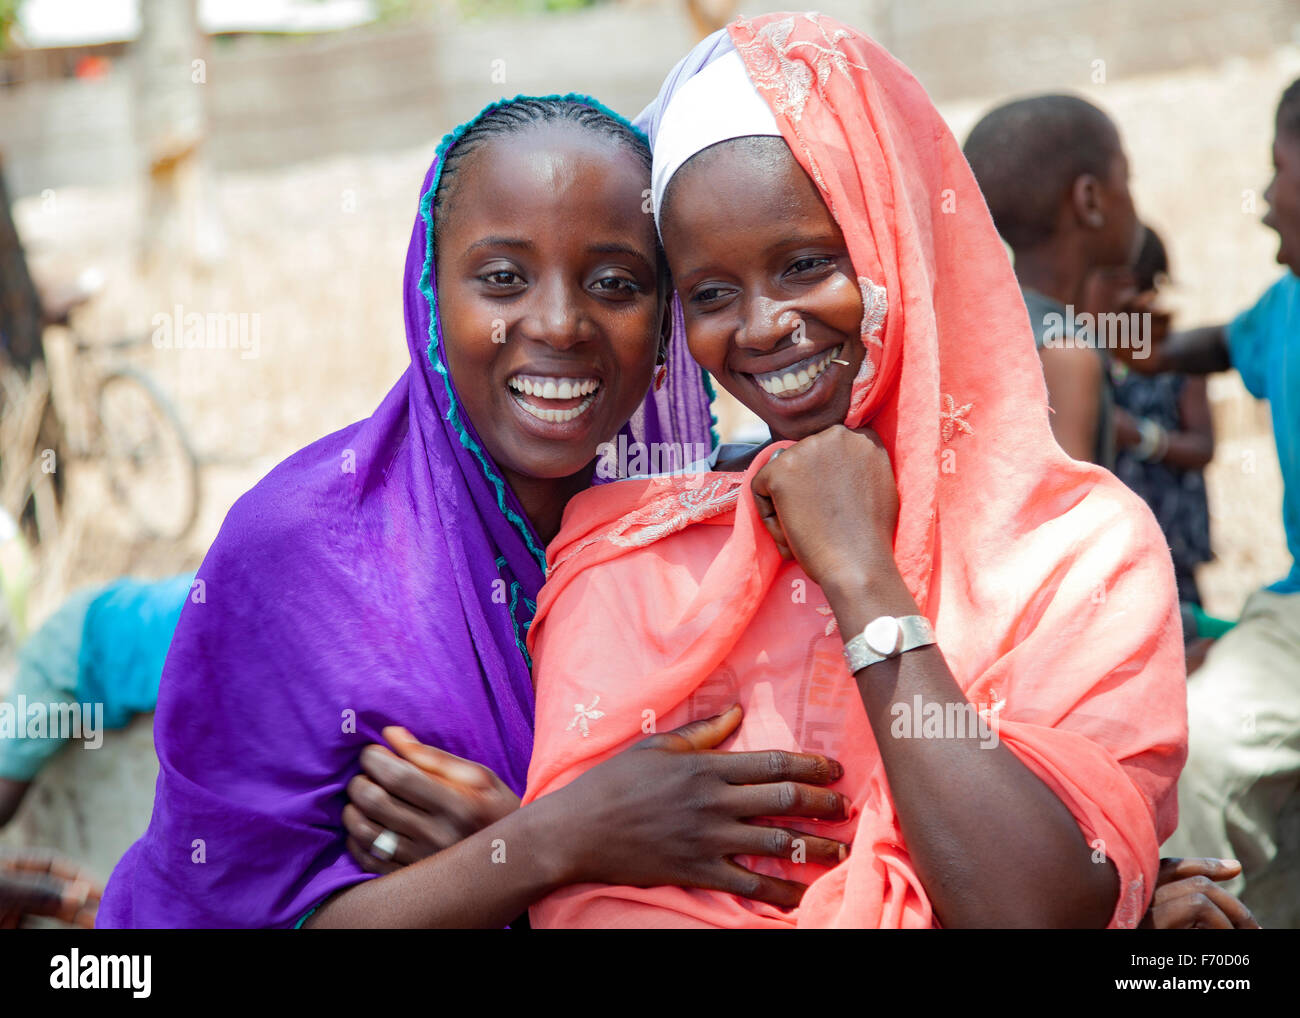 Gabu, Guinea-Bissau - 10 maggio 2014: Ritratto di due ragazze africane felici che indossano abiti e sciarpe tradizionali Foto Stock